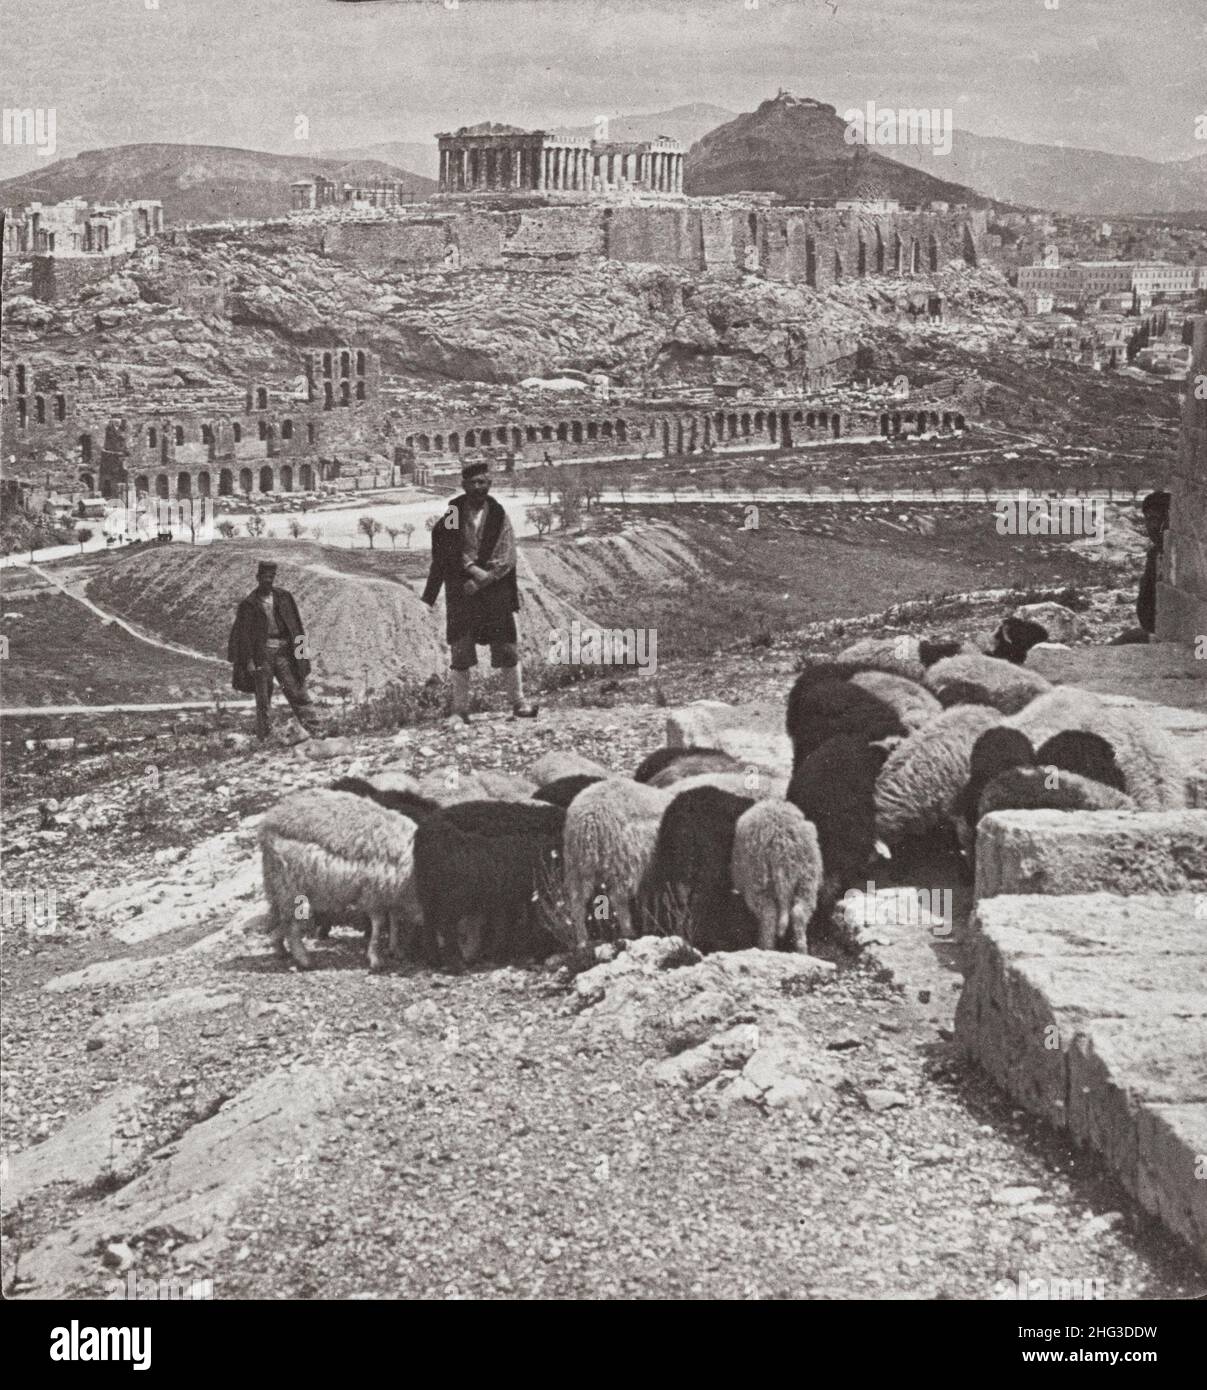 Vintage Foto von der Akropolis und Lykabettos (Königspalast rechts), Athen, Griechenland. 1907 Foto zeigt Herde von Schafen grasen und zwei Männer stehen Stockfoto